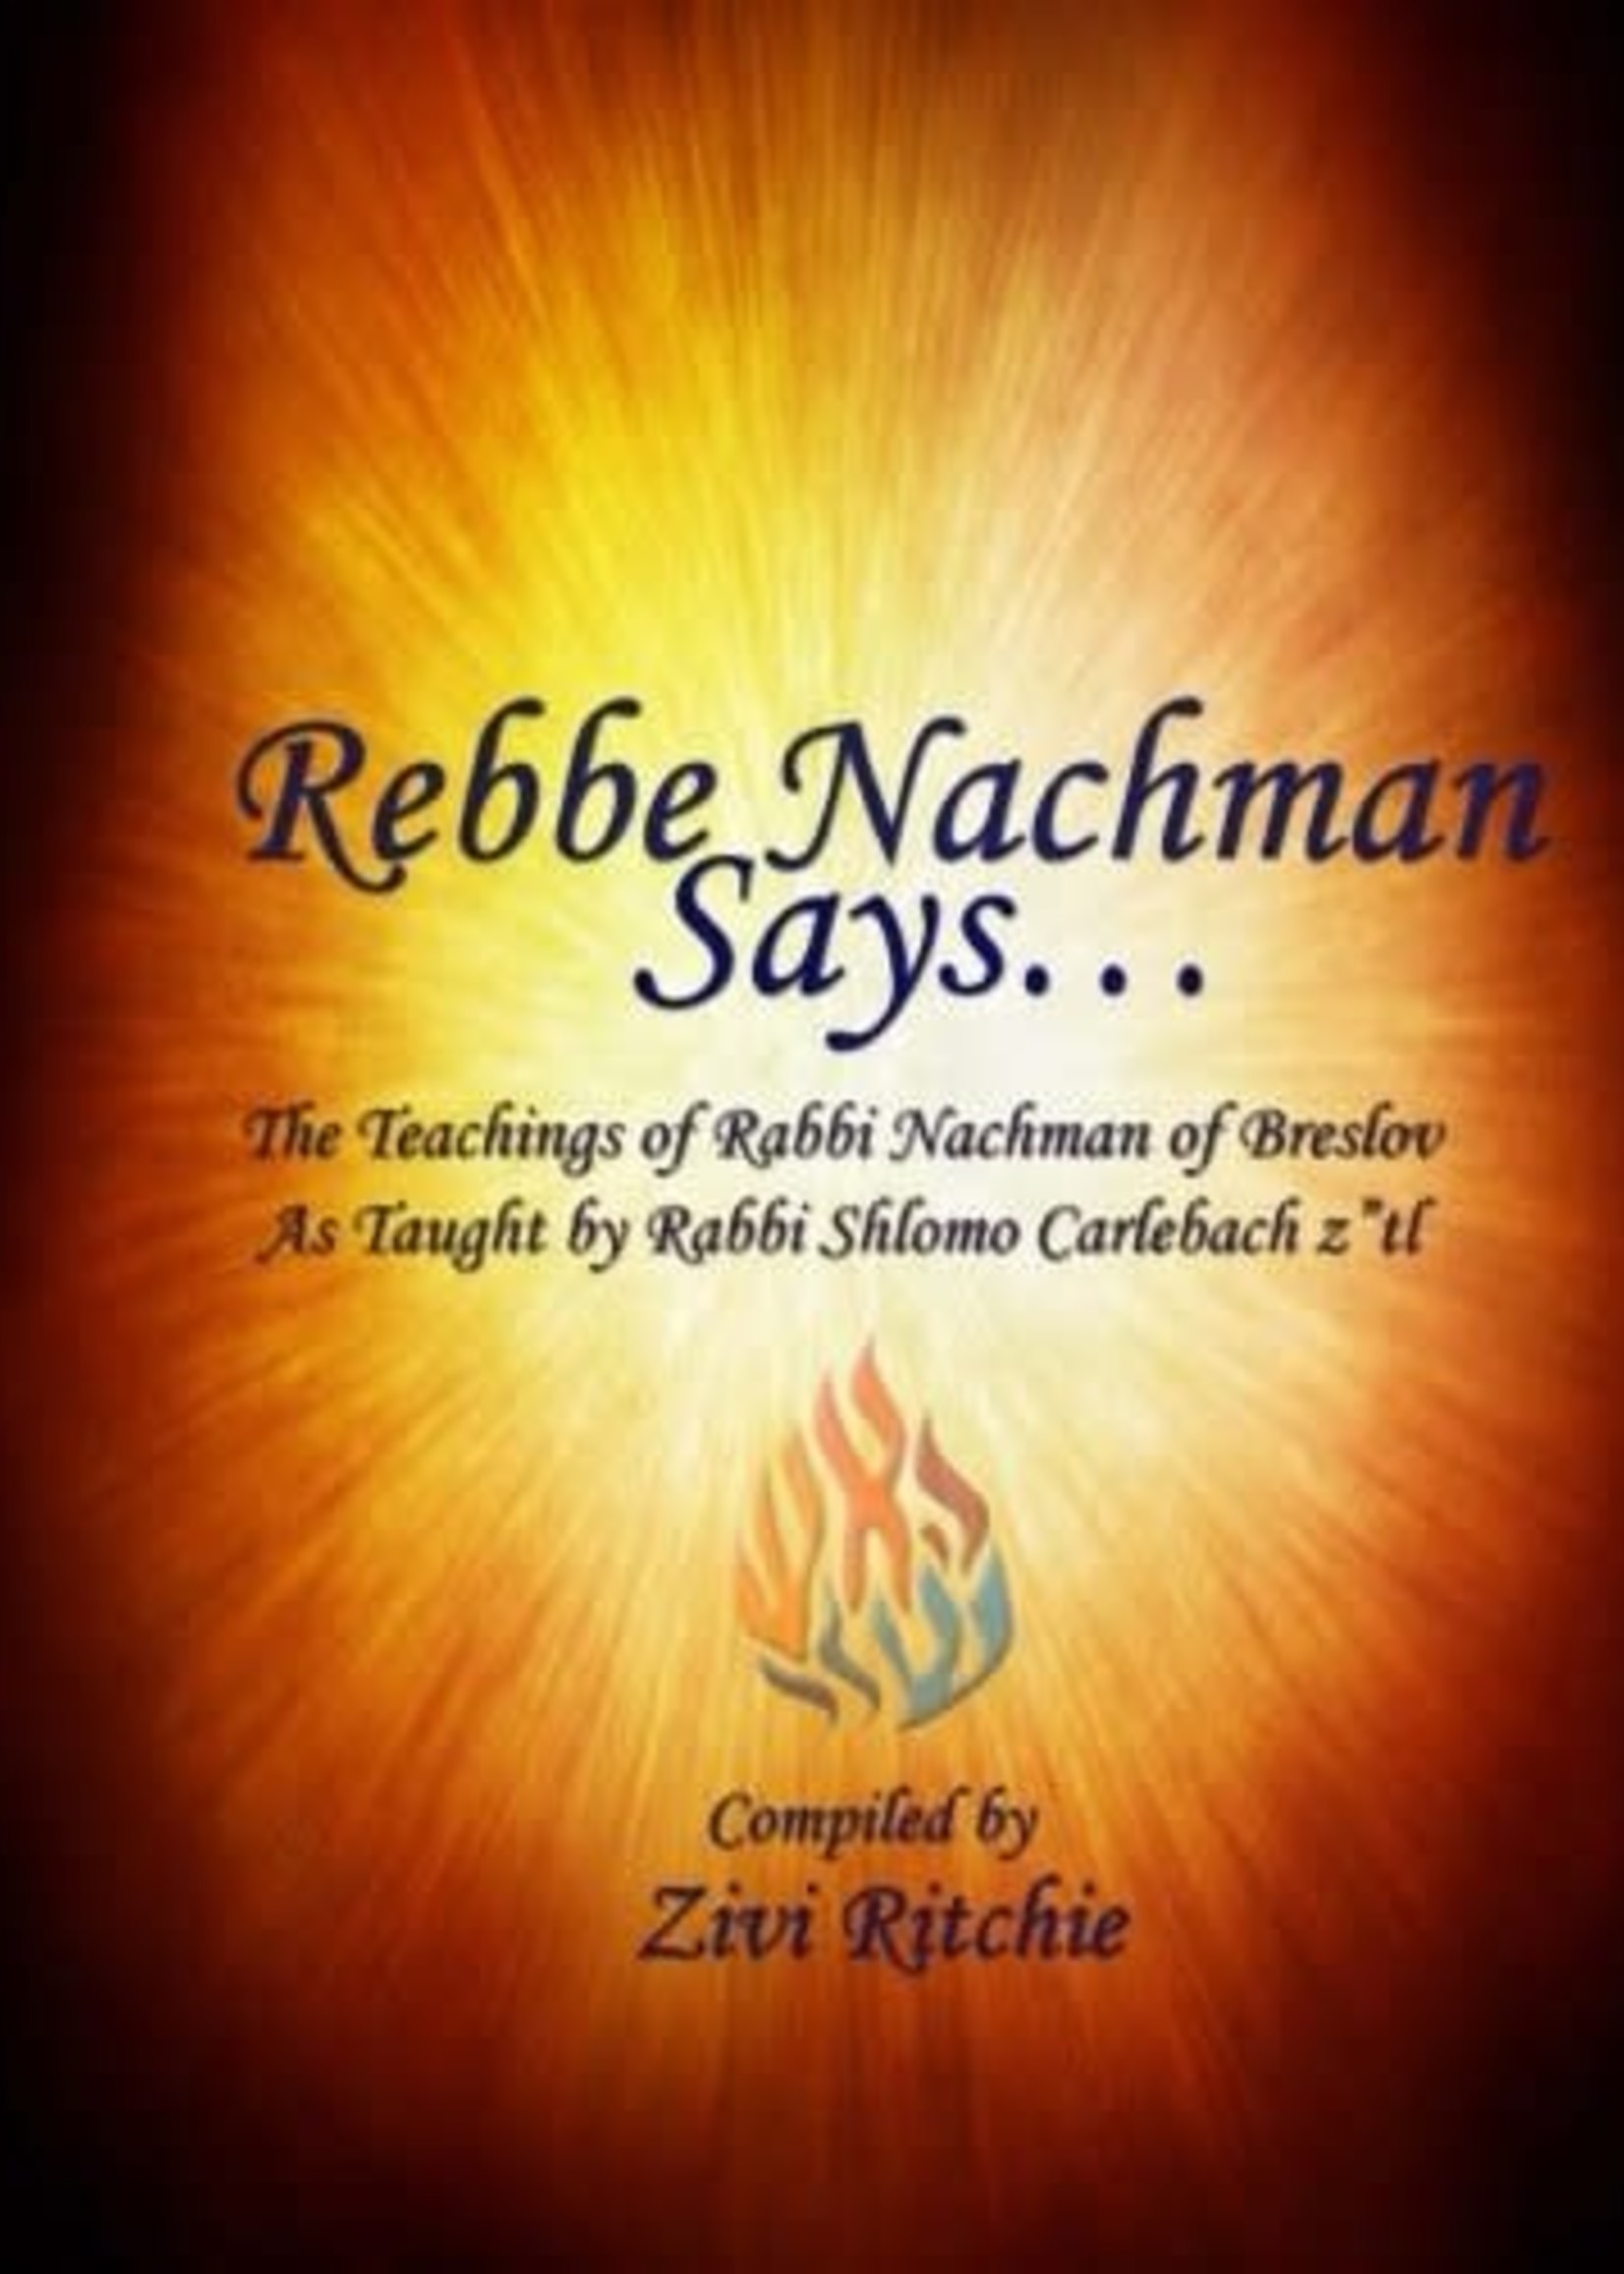 Rebbe Nachman Says... Taught by Rabbi Shlomo Carlebach Ztl "